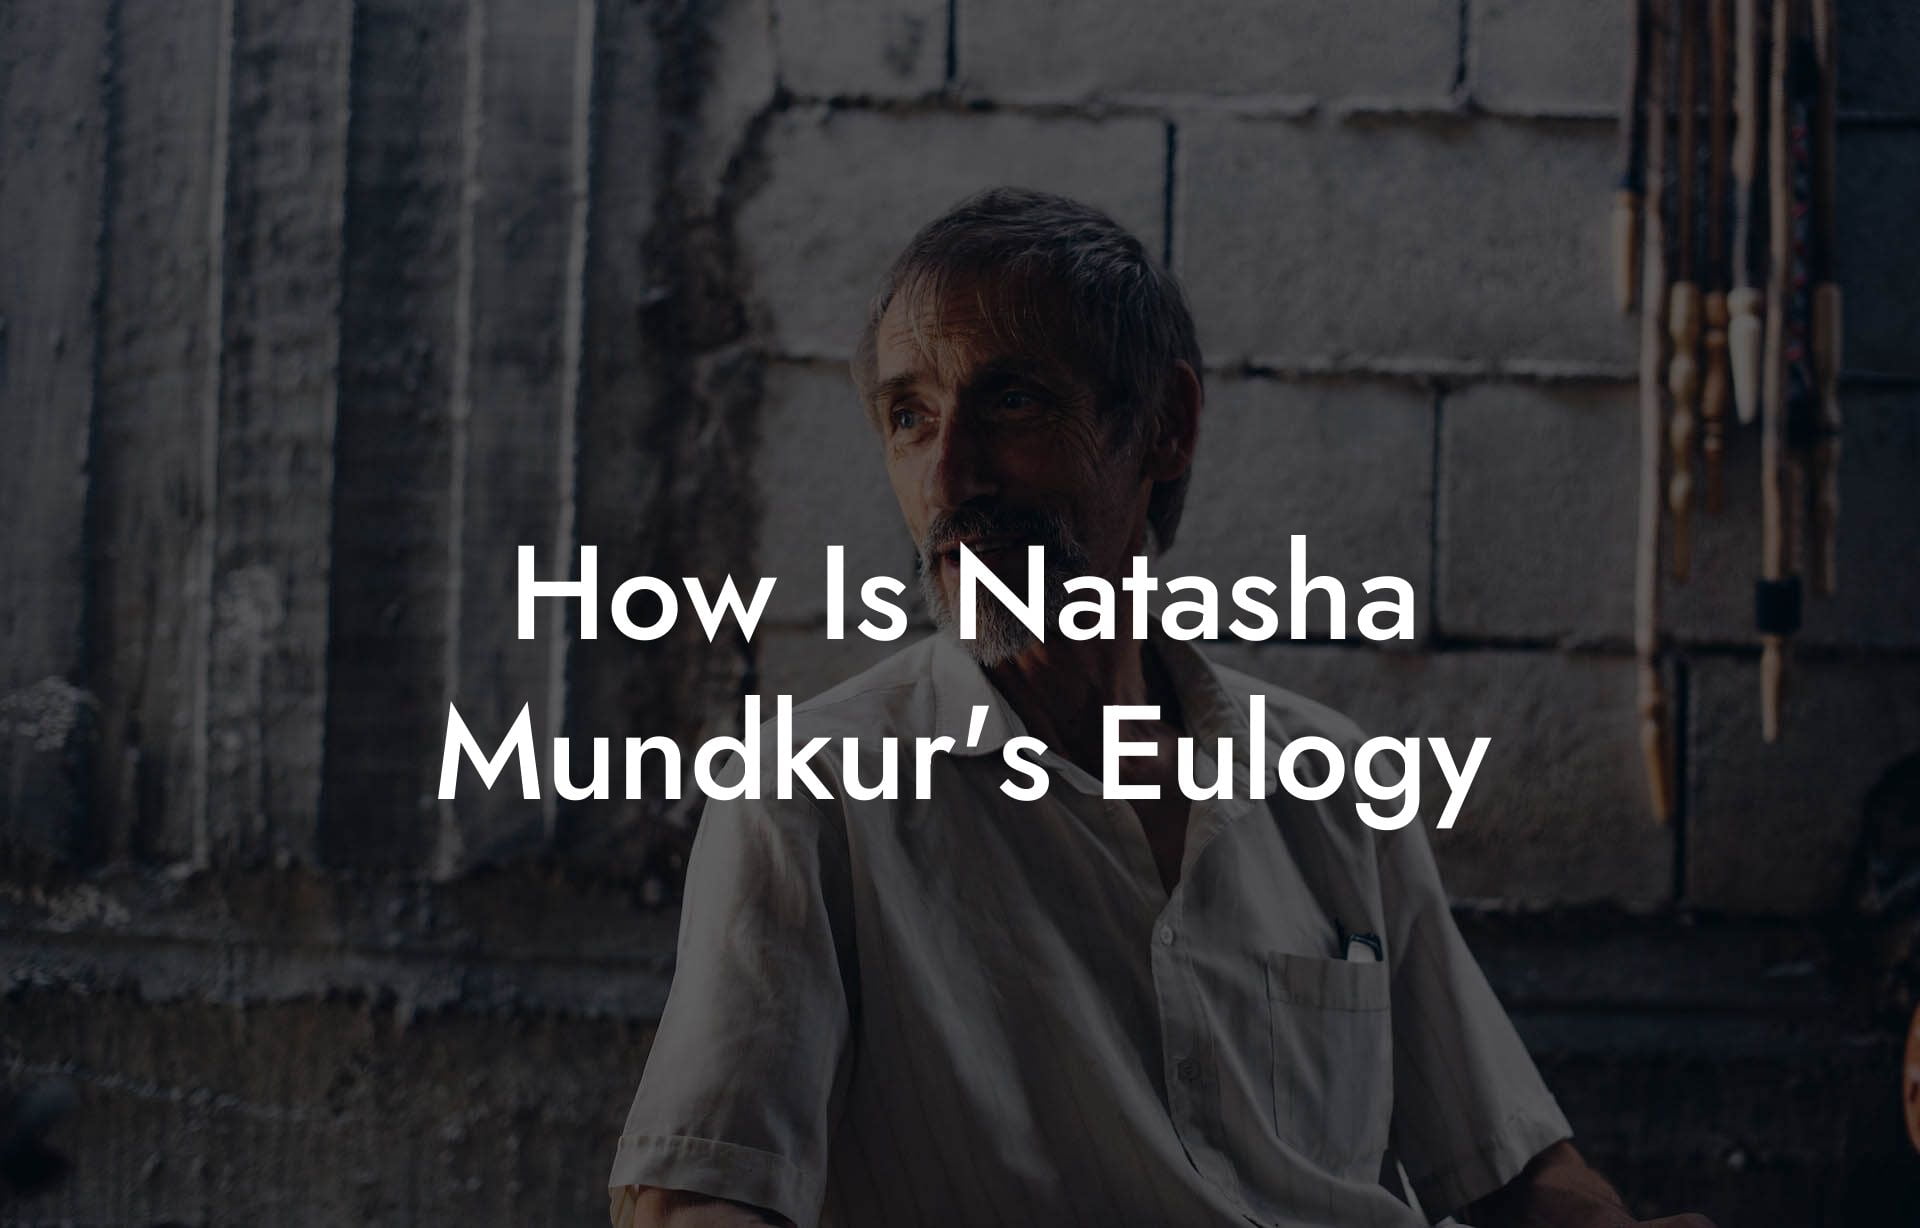 How Is Natasha Mundkur's Eulogy